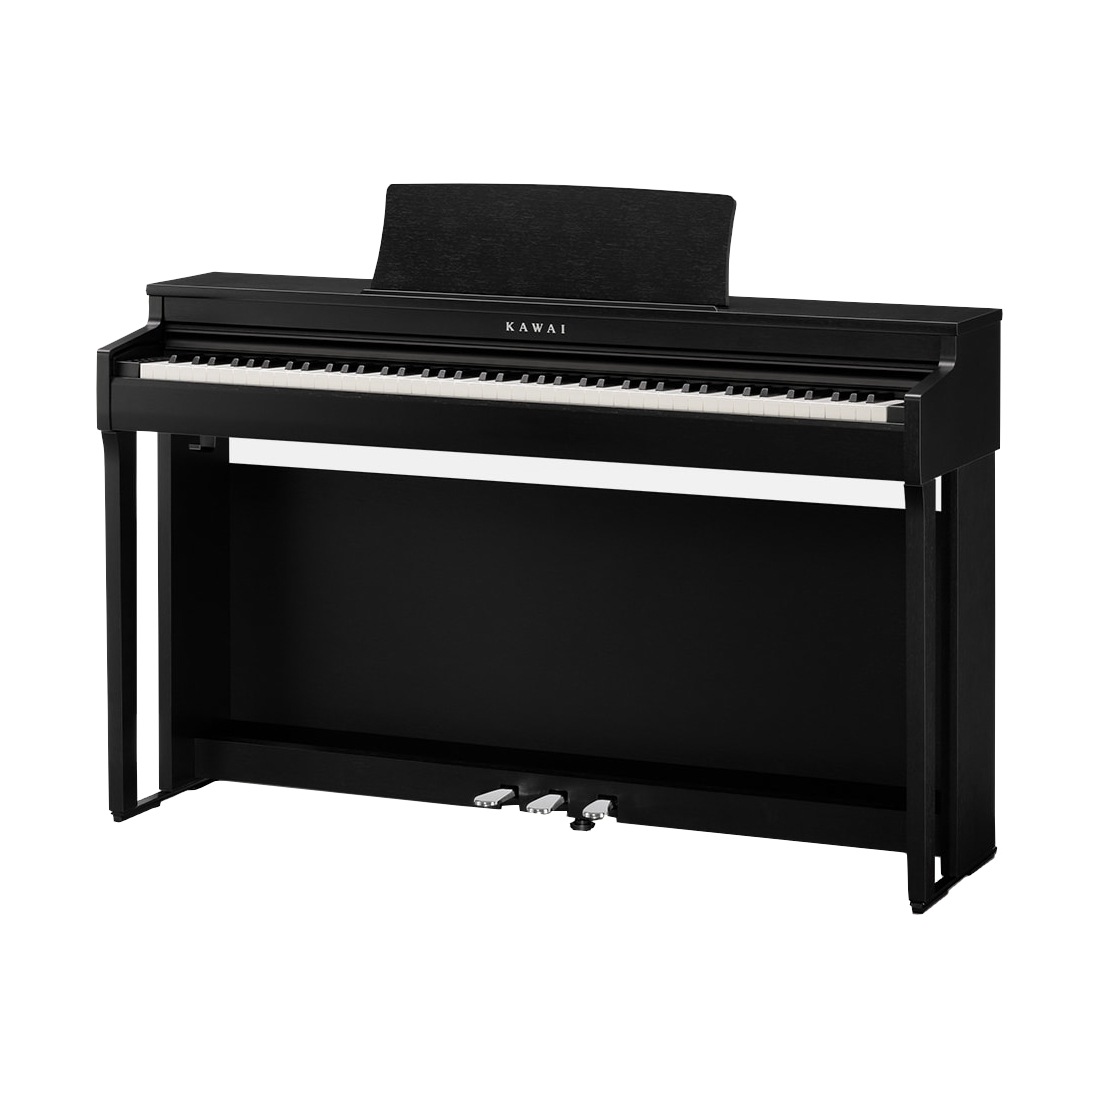 KAWAI CN201 B - цифровое пианино, банкетка, механика Responsive Hammer III, 88 клавиш, цвет черный купить в prostore.me